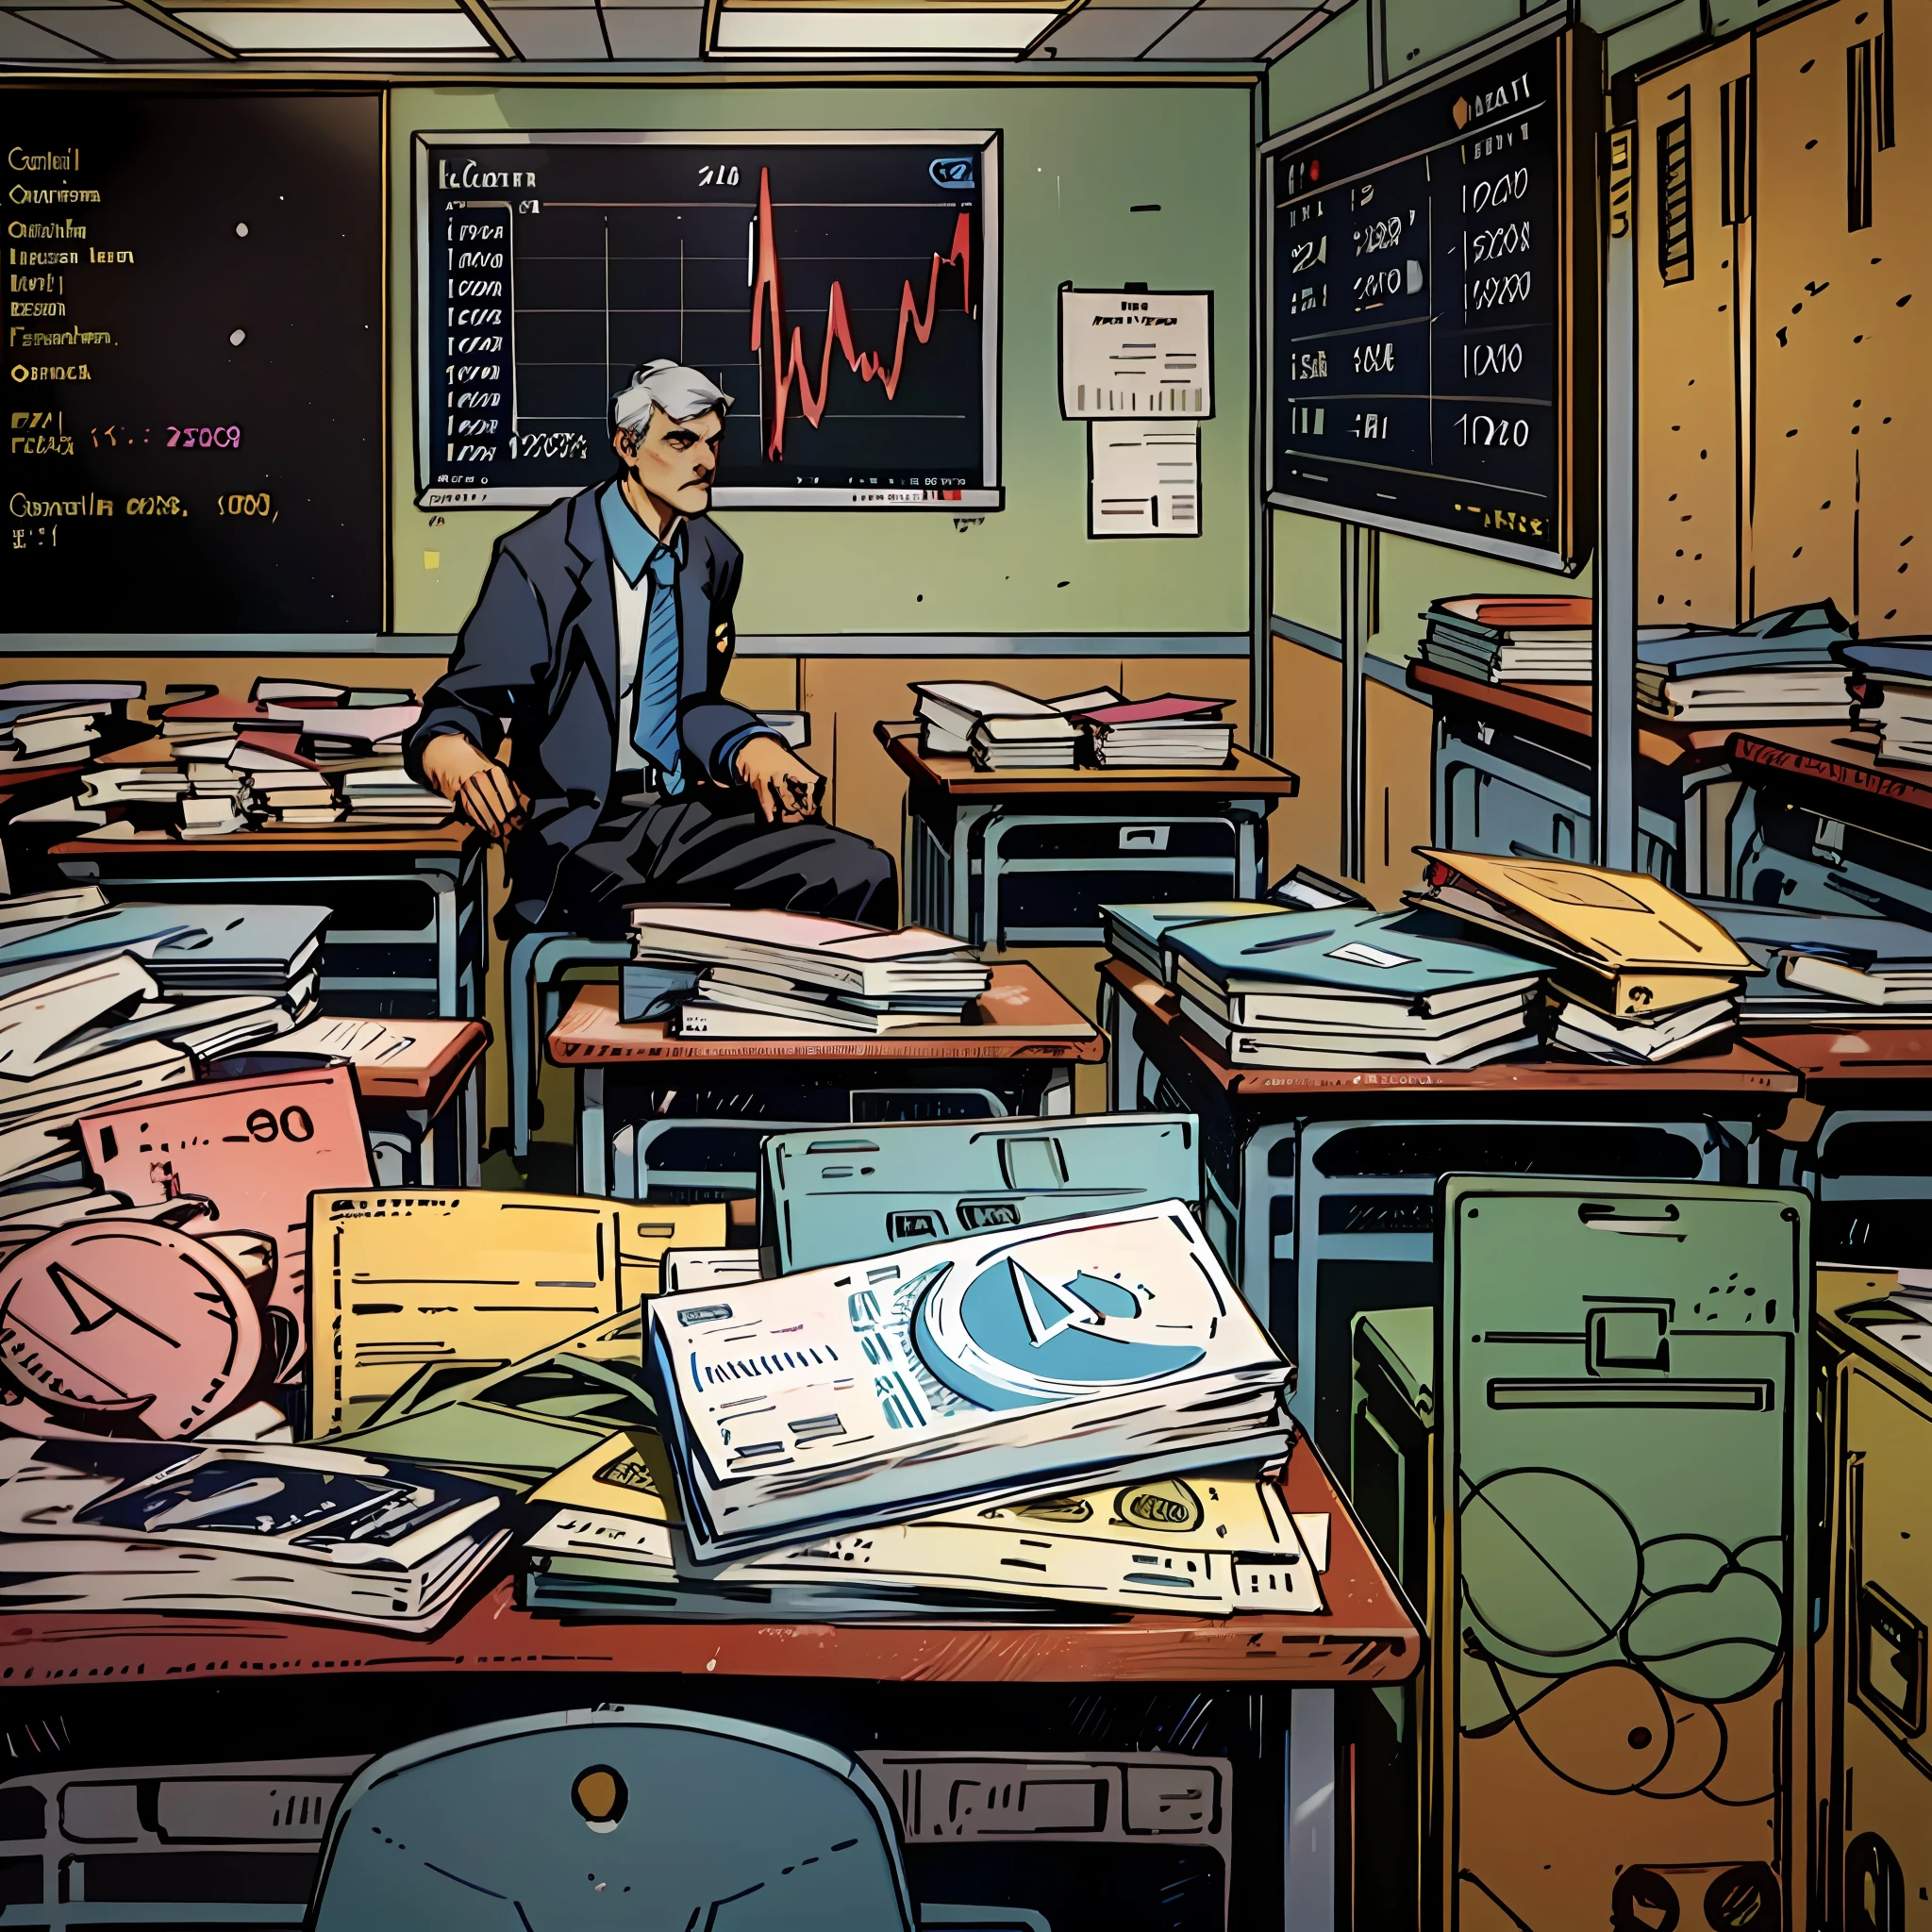 保罗·克鲁格曼在教室里的照片, 向学生讲授全球经济以及经济政策如何影响人们的生活, 背景中的一块板子上展示着 2008 年金融危机及其复苏的图表. --自动--s2